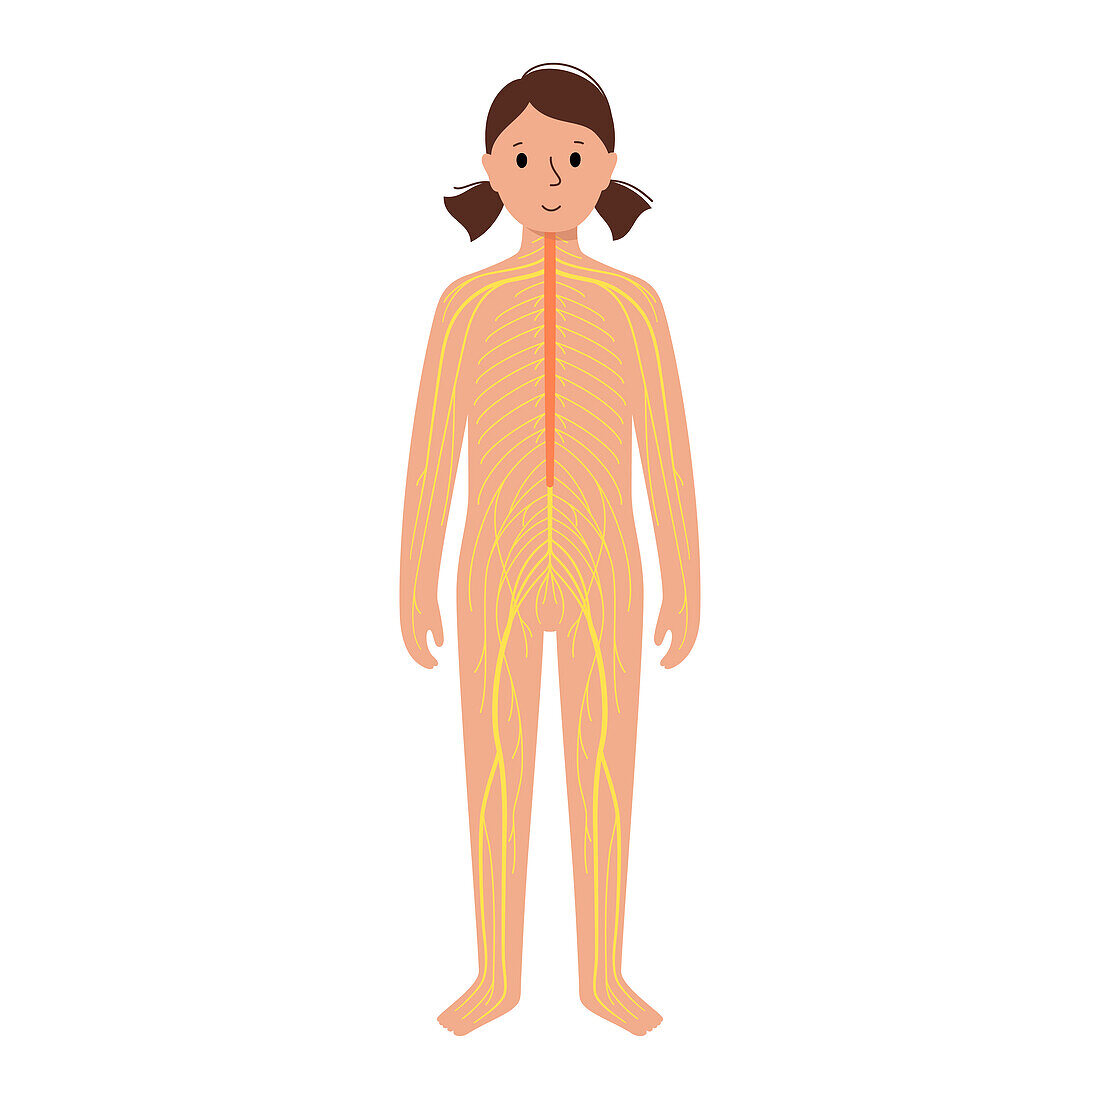 Human nervous system, illustration